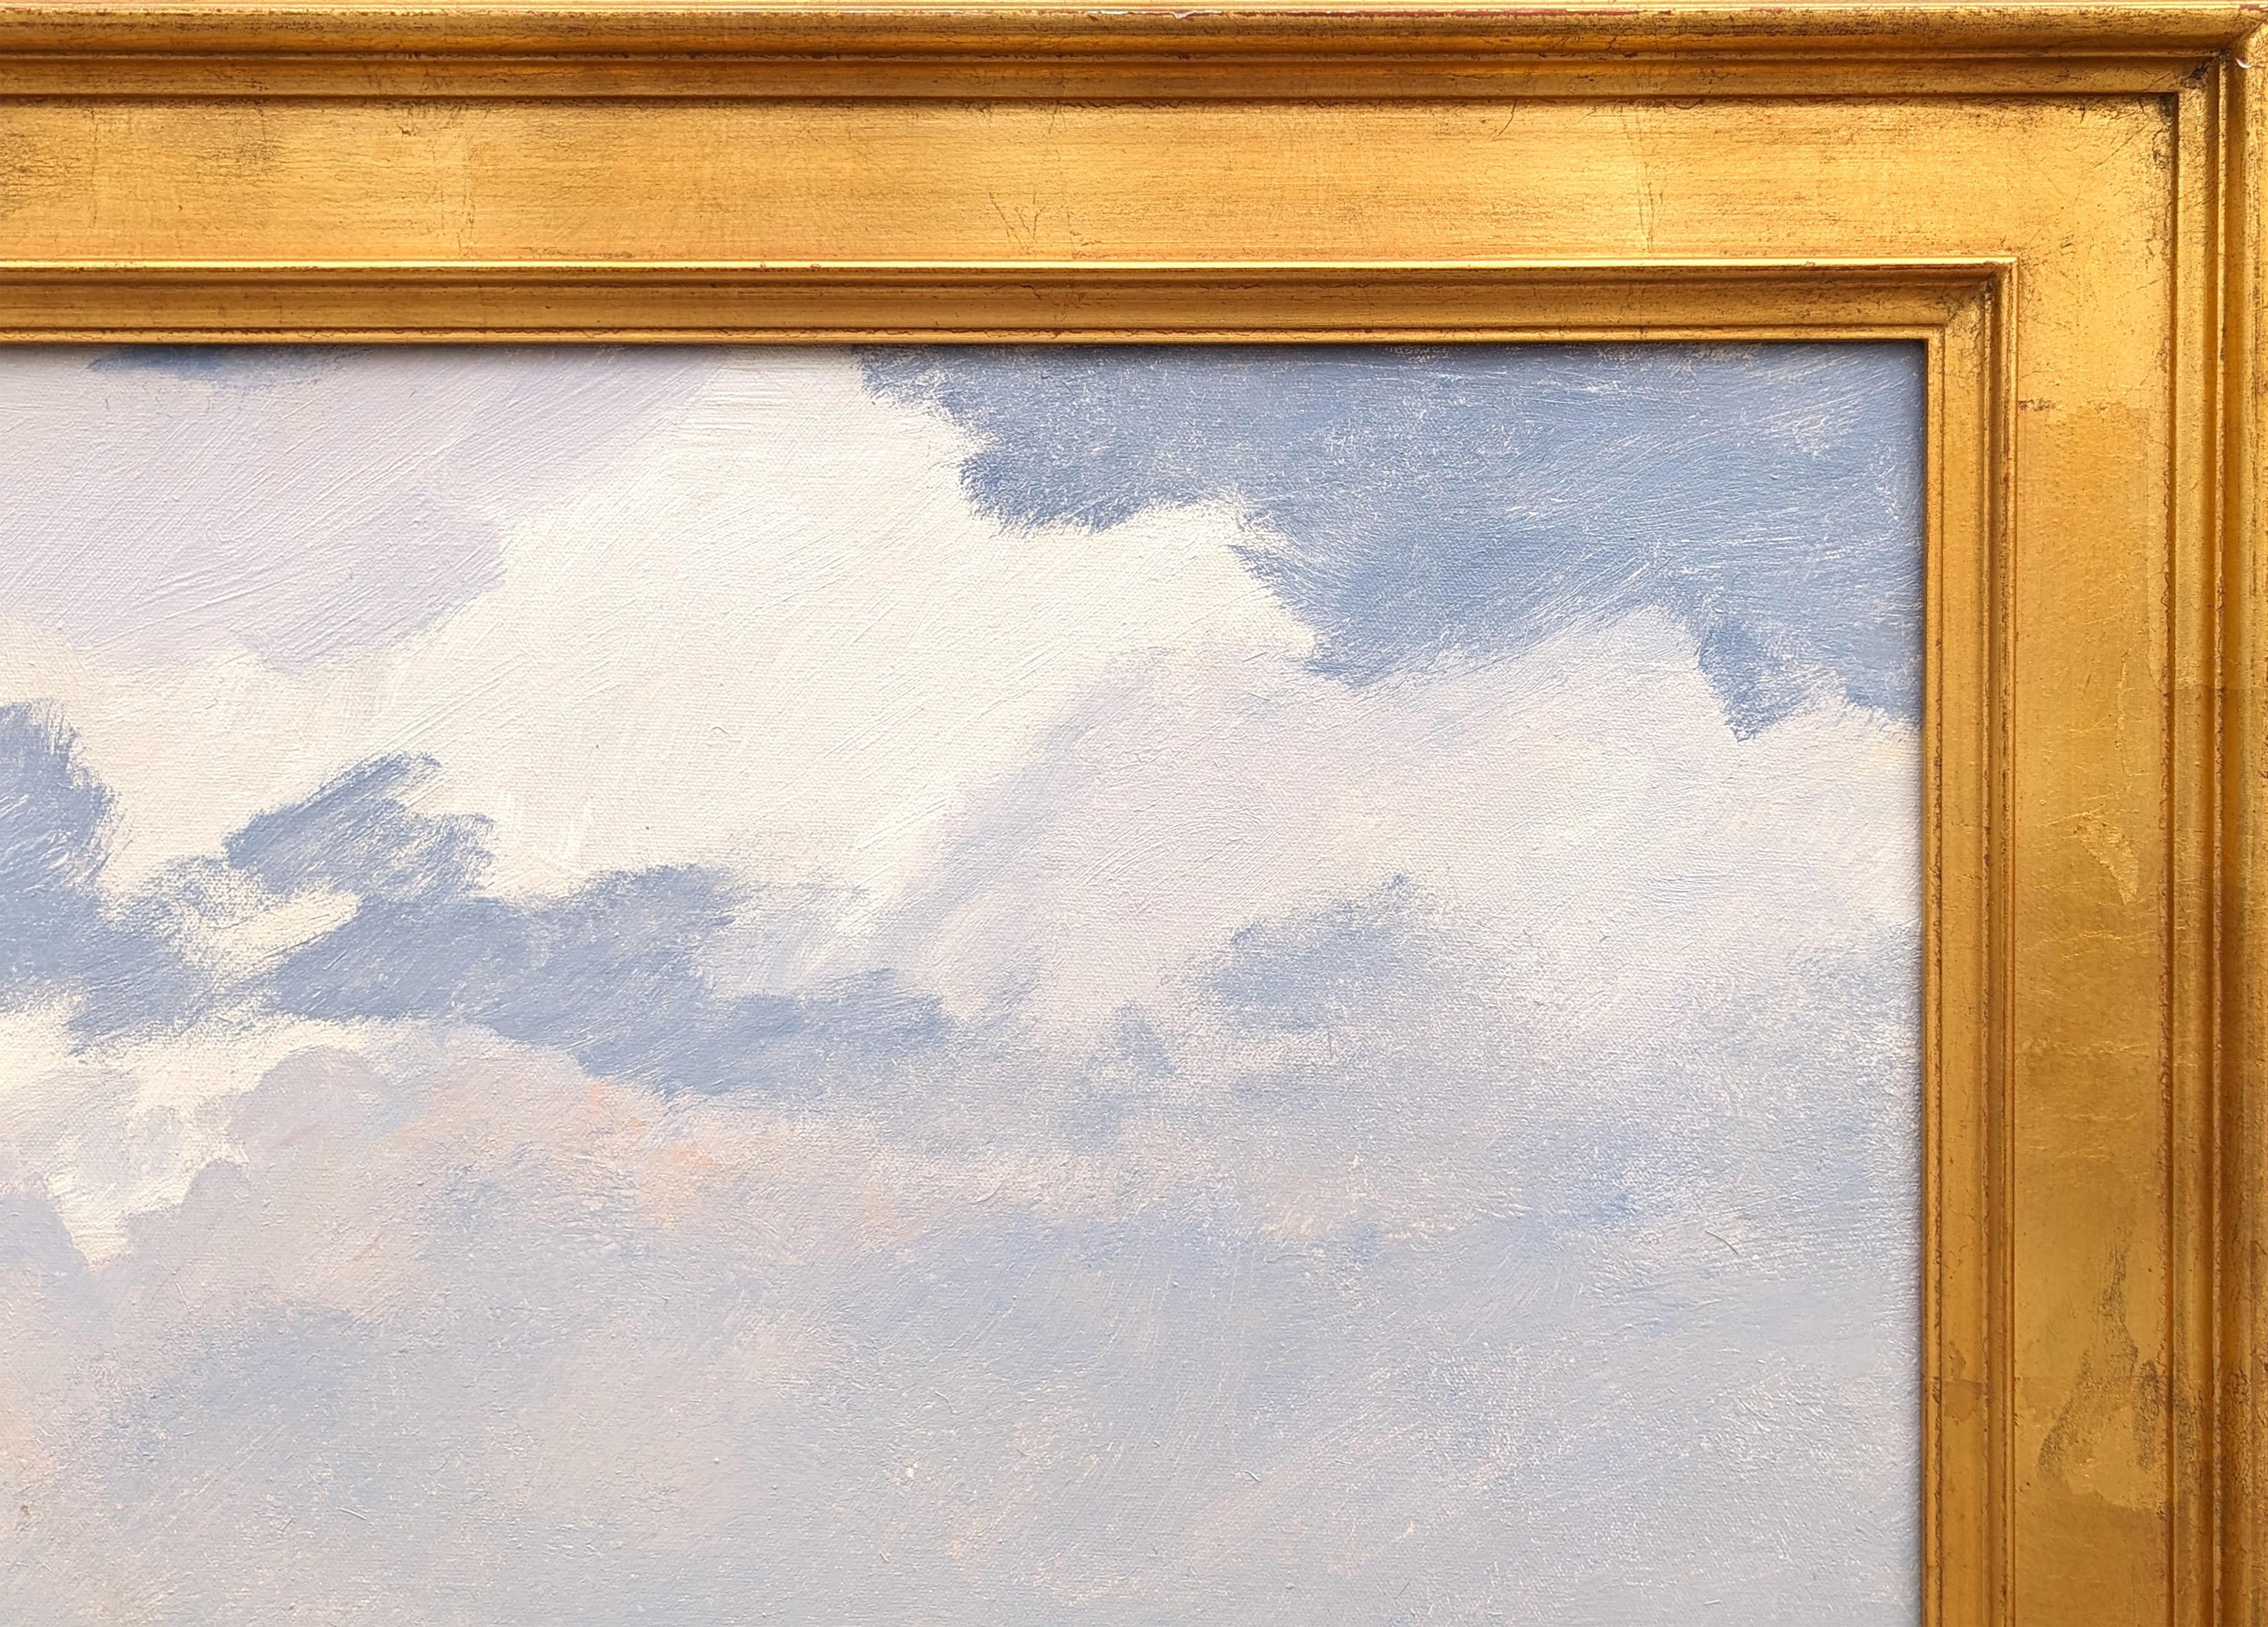 Naturalistische sportliche Landschaftsmalerei des texanischen Künstlers Al Barnes. Das Werk zeigt eine zentrale männliche Figur auf einem Luftkissenboot mit seinem Hund vor einer ruhigen texanischen Küstenlandschaft. Signiert in der rechten unteren